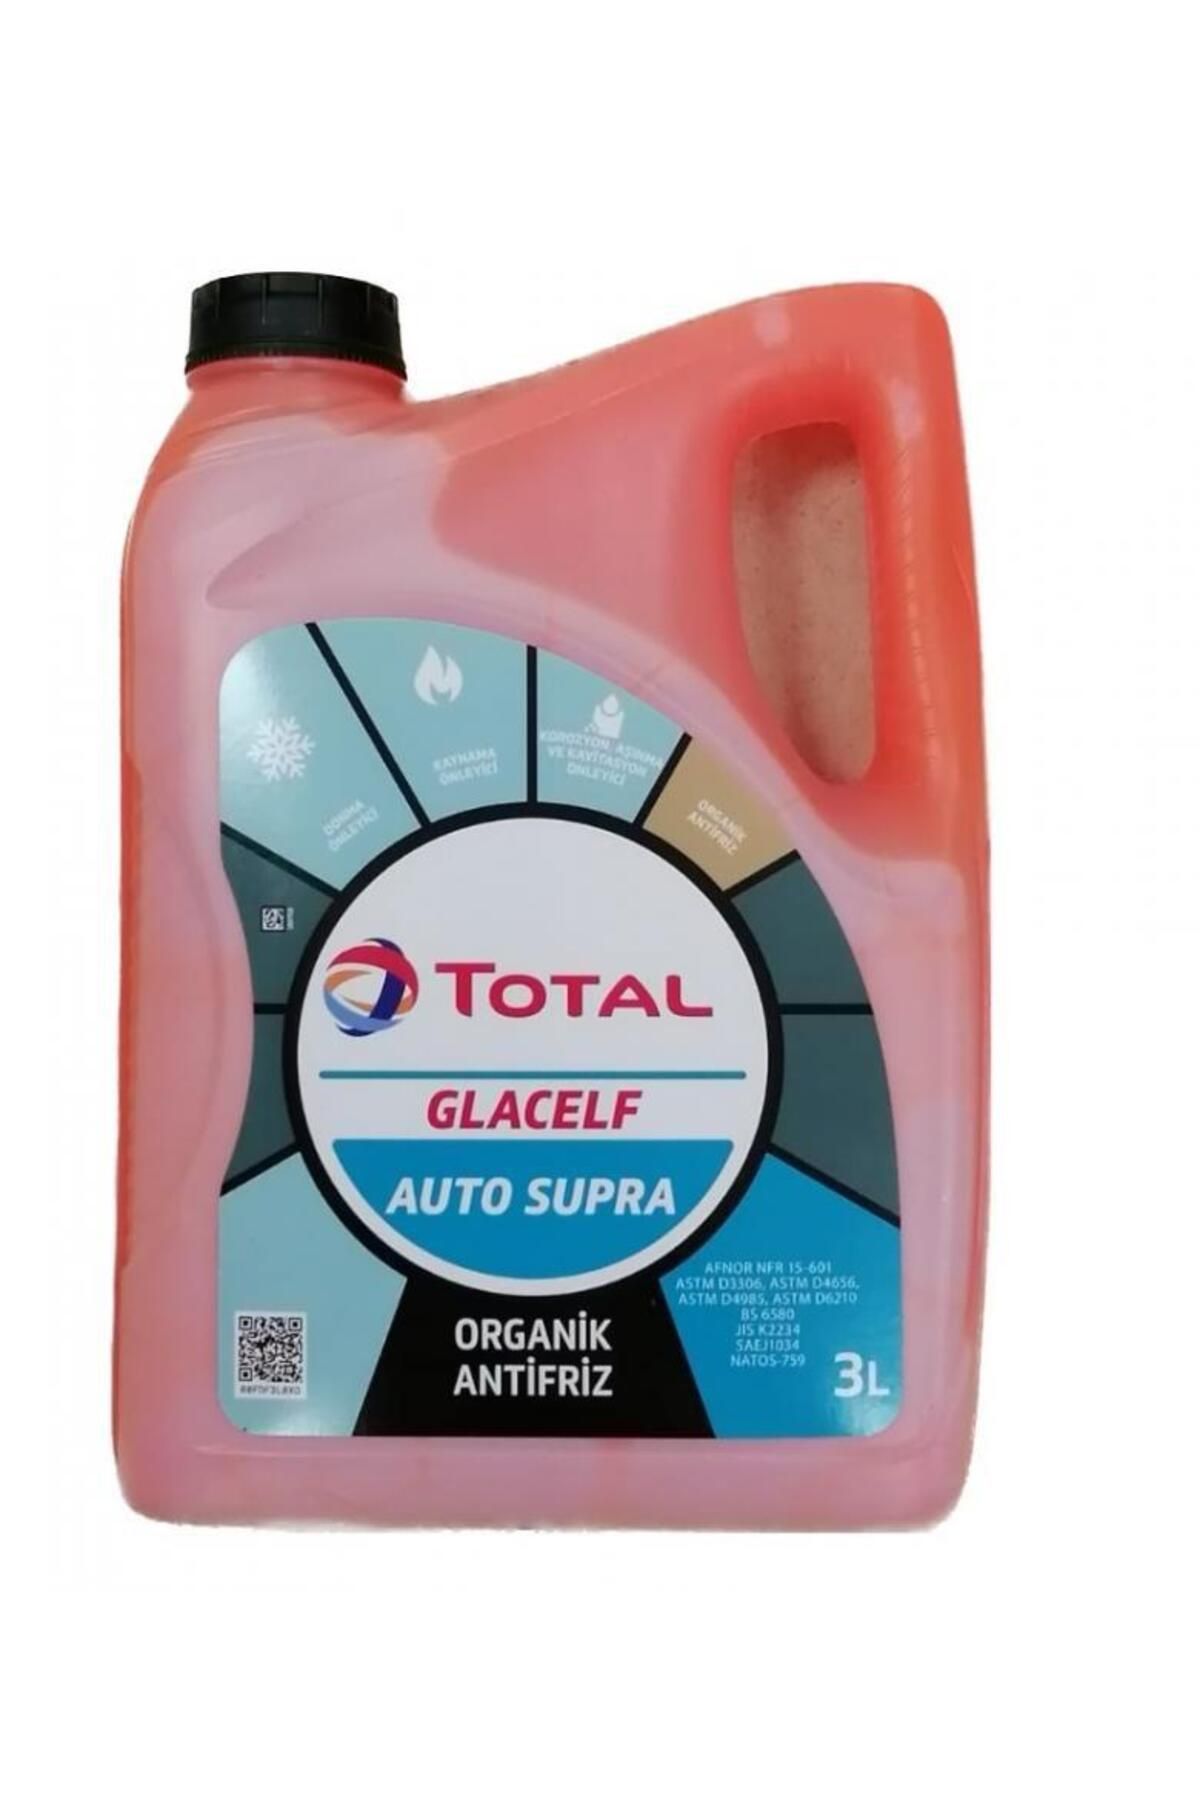 Total Glacelf Auto Supra 5B-3Litre ANTİFRİZ 3LT